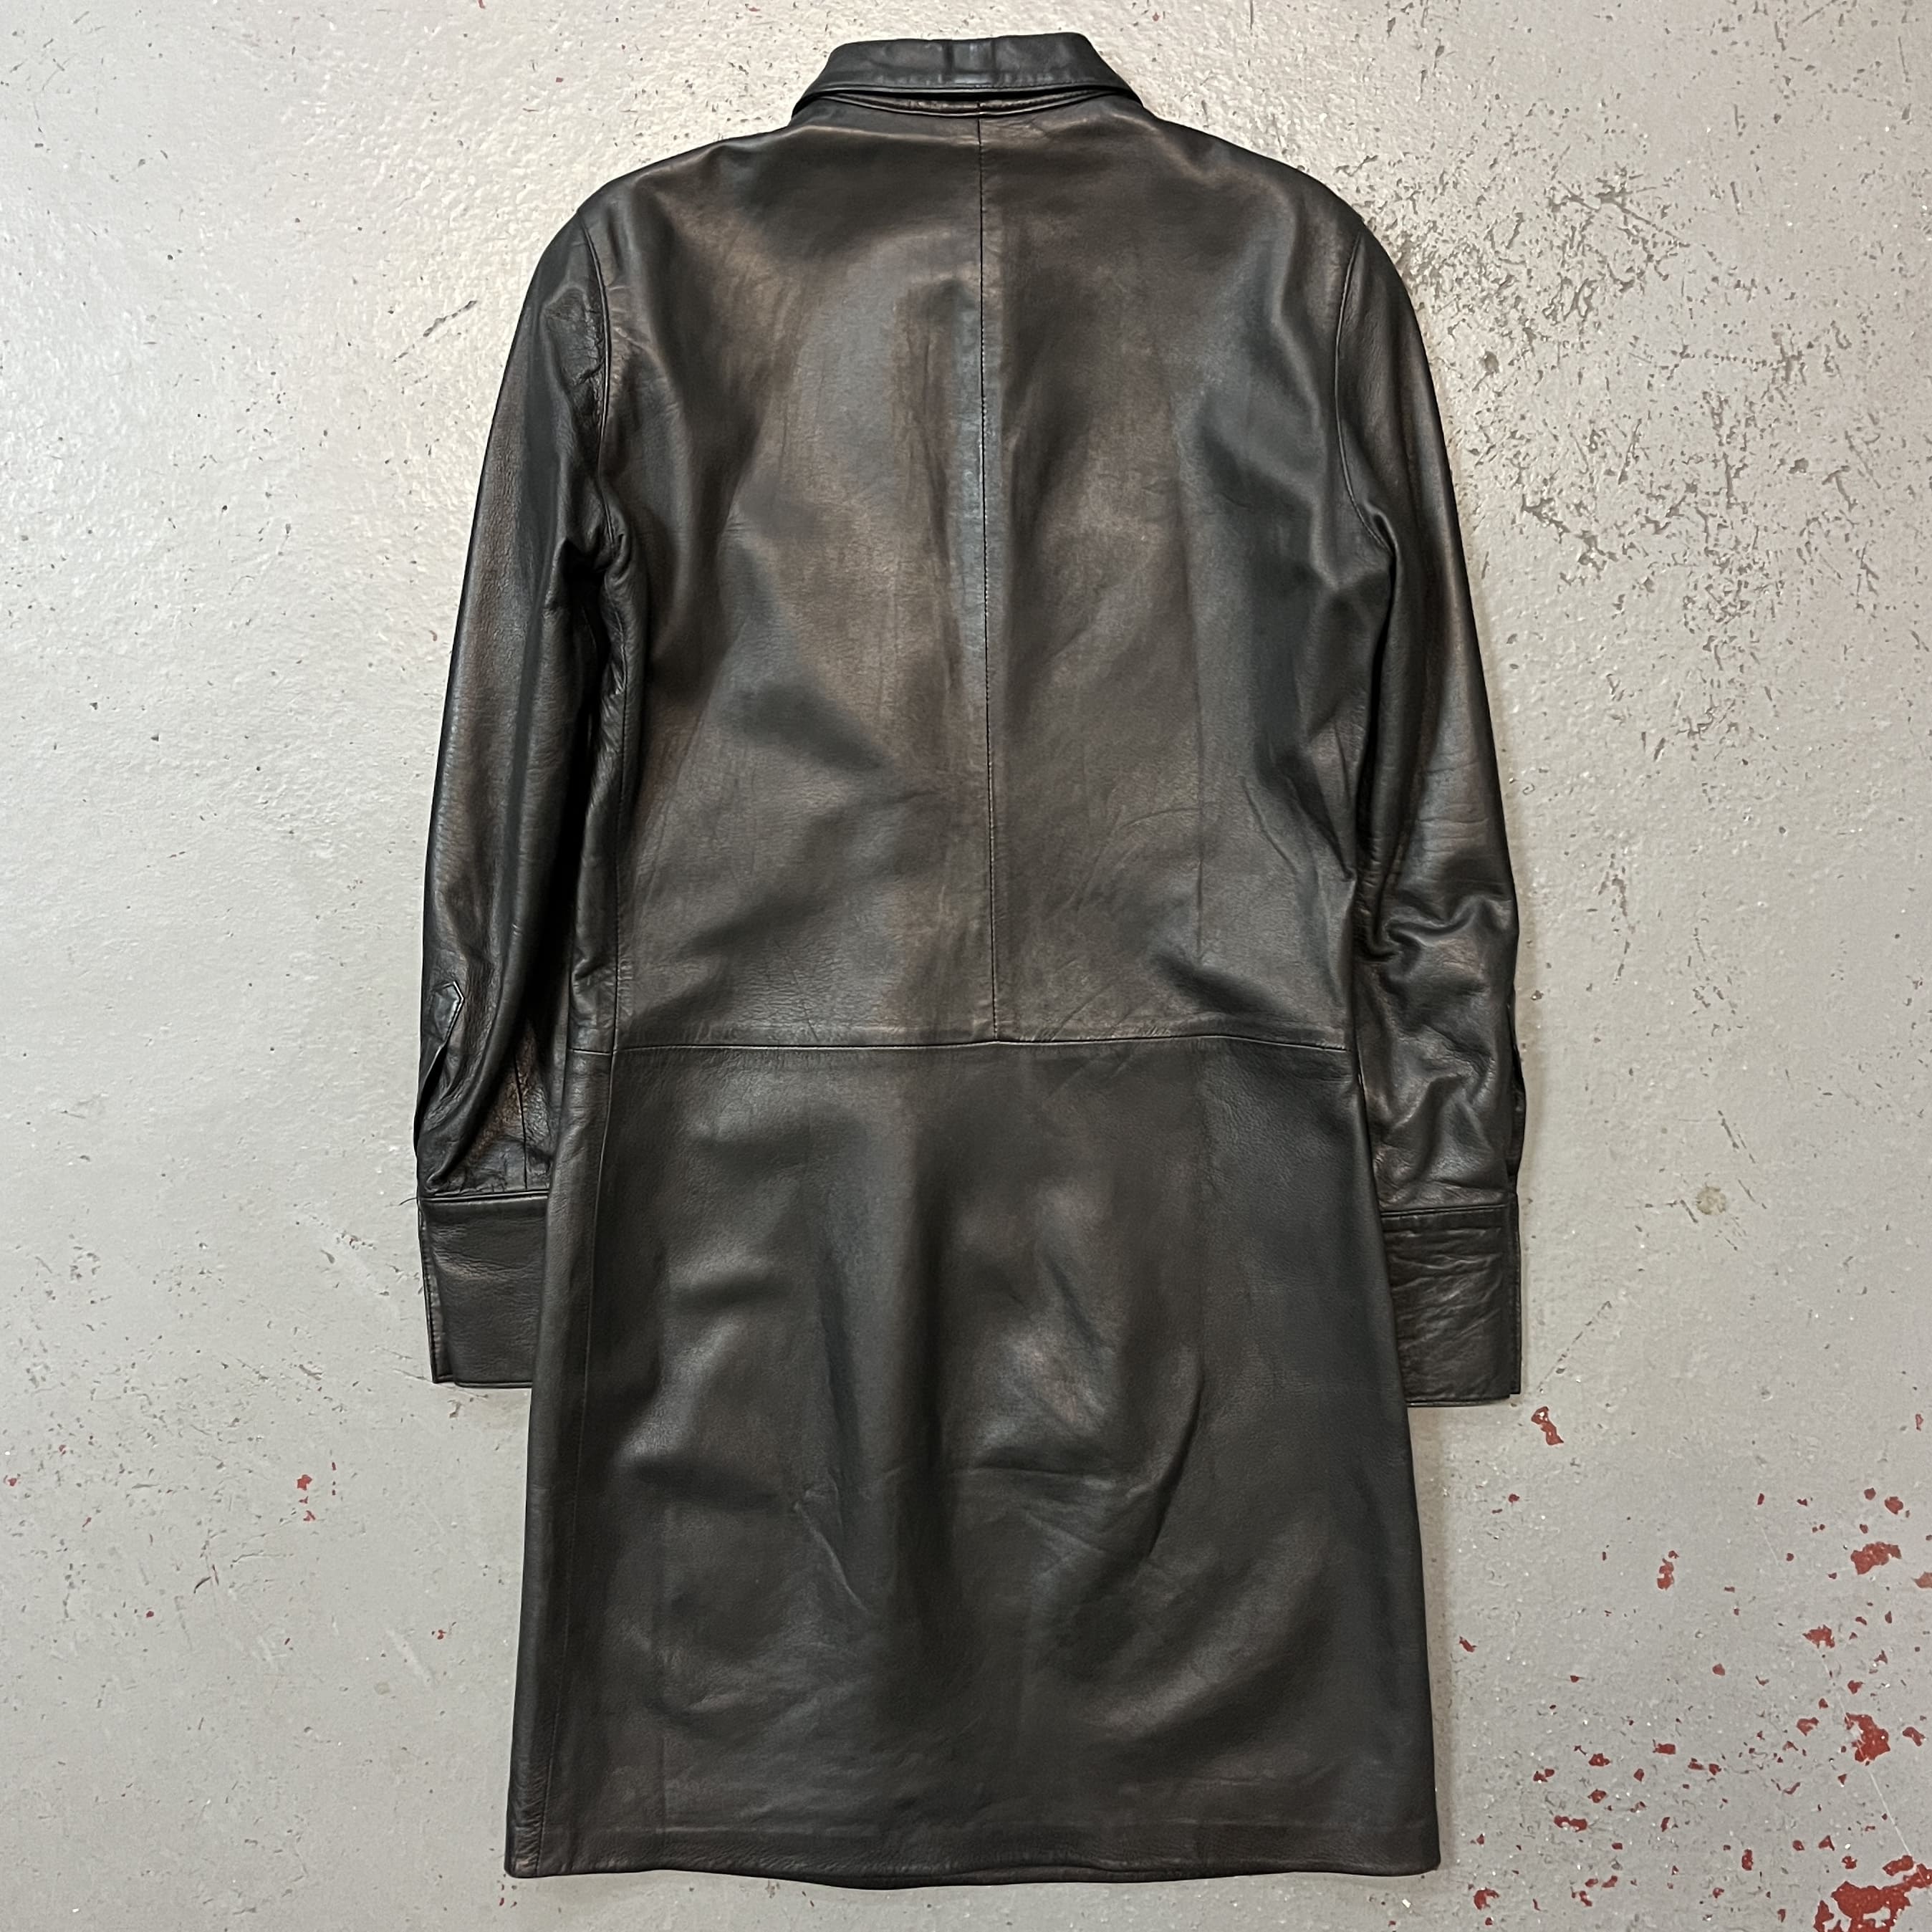 Helmut Lang, A/W 1996 Leather Dress - La Nausée - fashion archive 